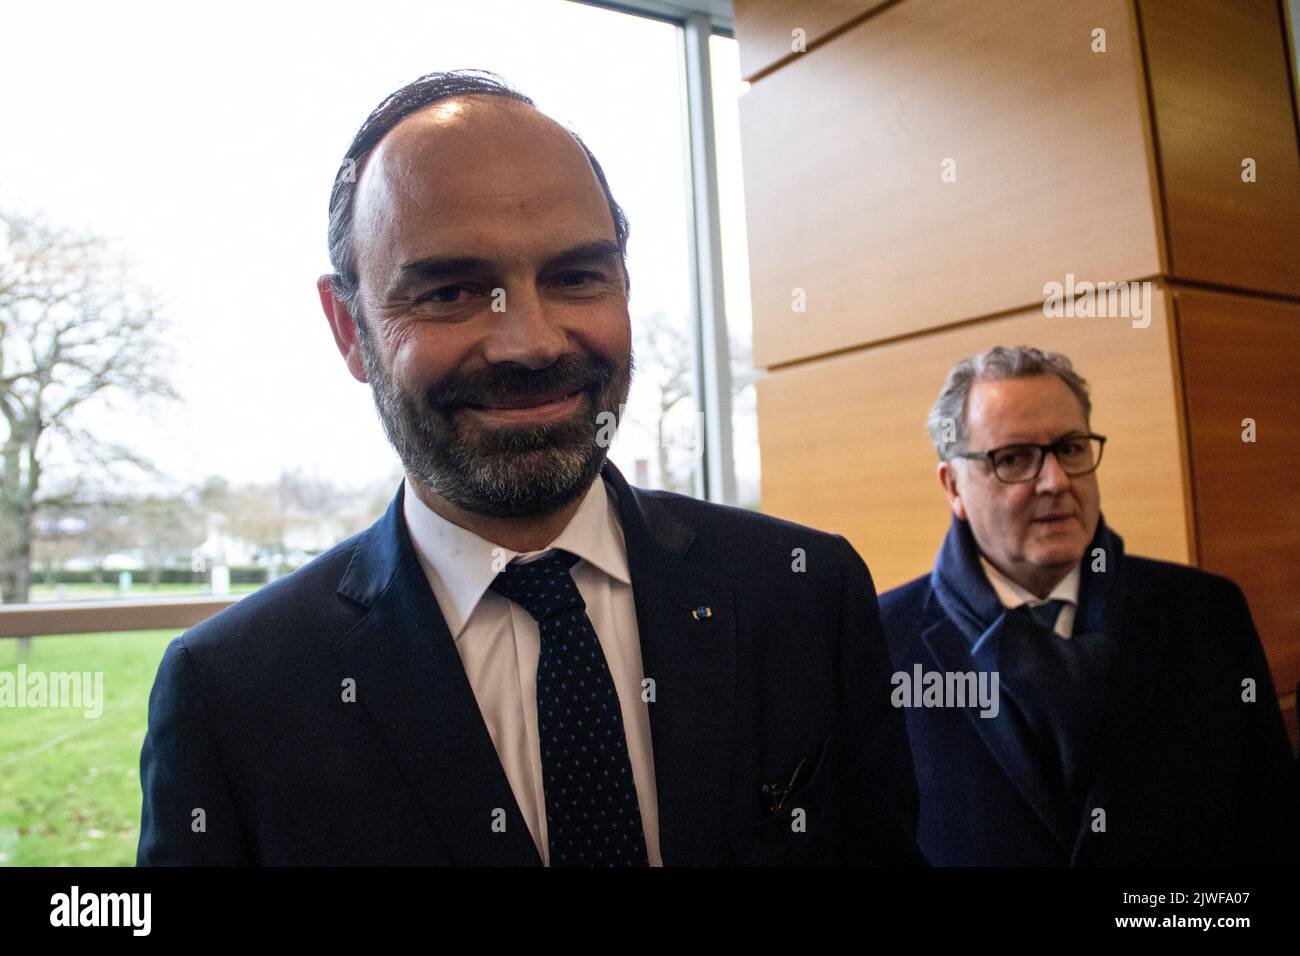 Édouard Charles Philippe ist ein französischer Politiker, der seit 2020 als Bürgermeister von Le Havre tätig ist und das Amt zuvor von 2010 bis 2017 inne hatte. Vom 15. Mai 2017 bis zum 3. Juli 2020 war er unter Präsident Emmanuel Macron Premierminister von Frankreich. Bretagne, Frankreich. Stockfoto